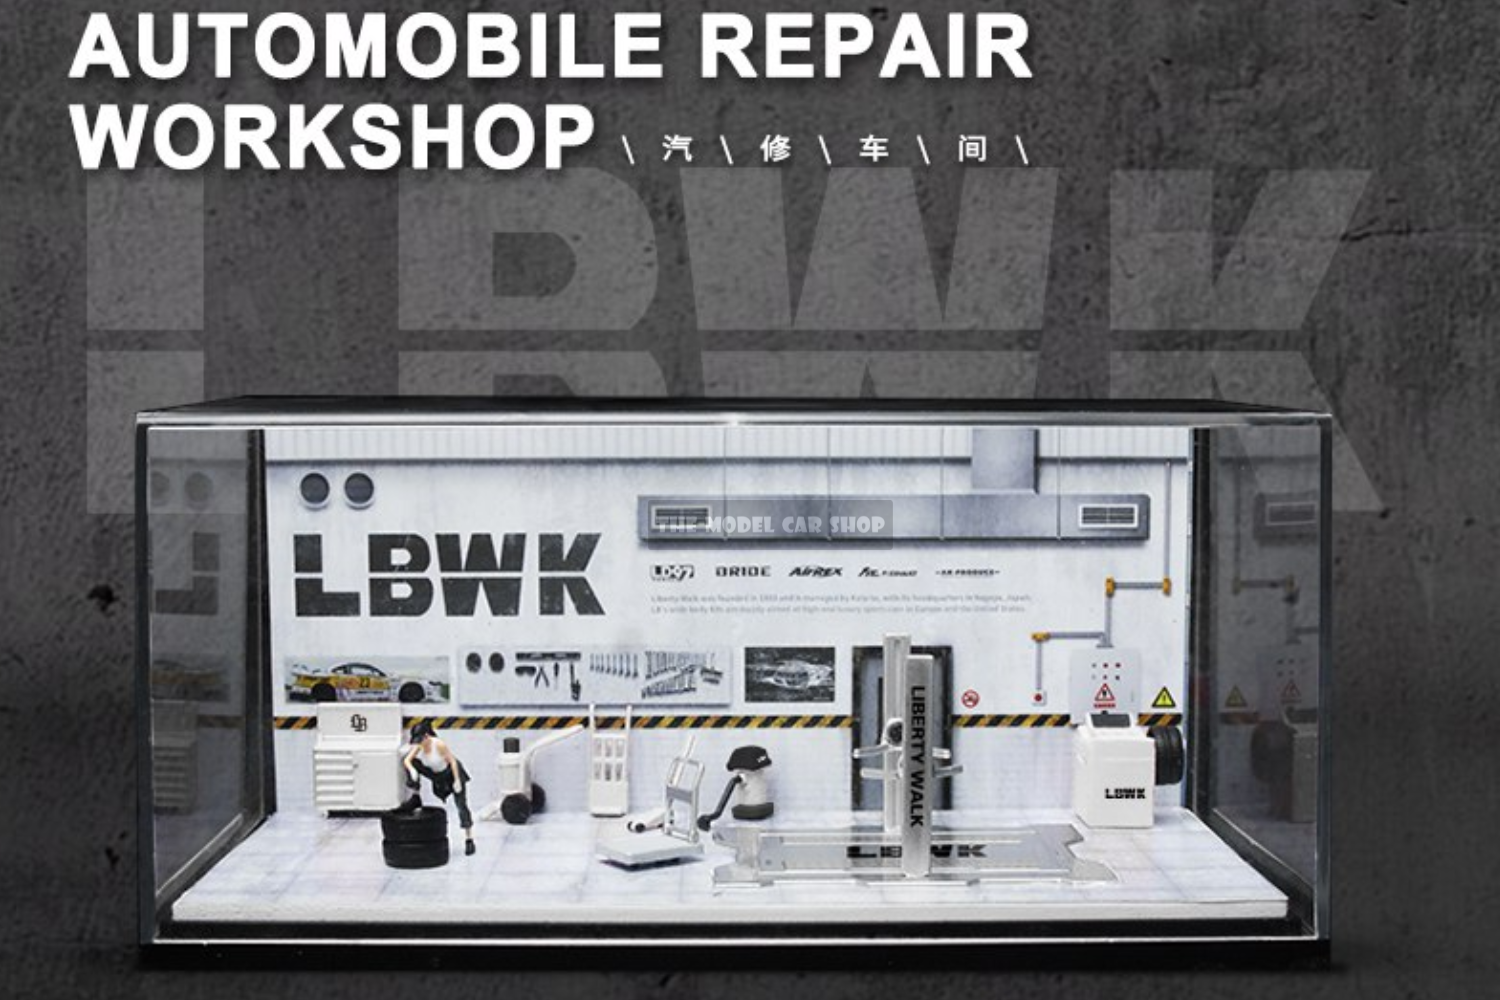 More Art] Automobile Repair Workshop Diorama – The Model Car Shop